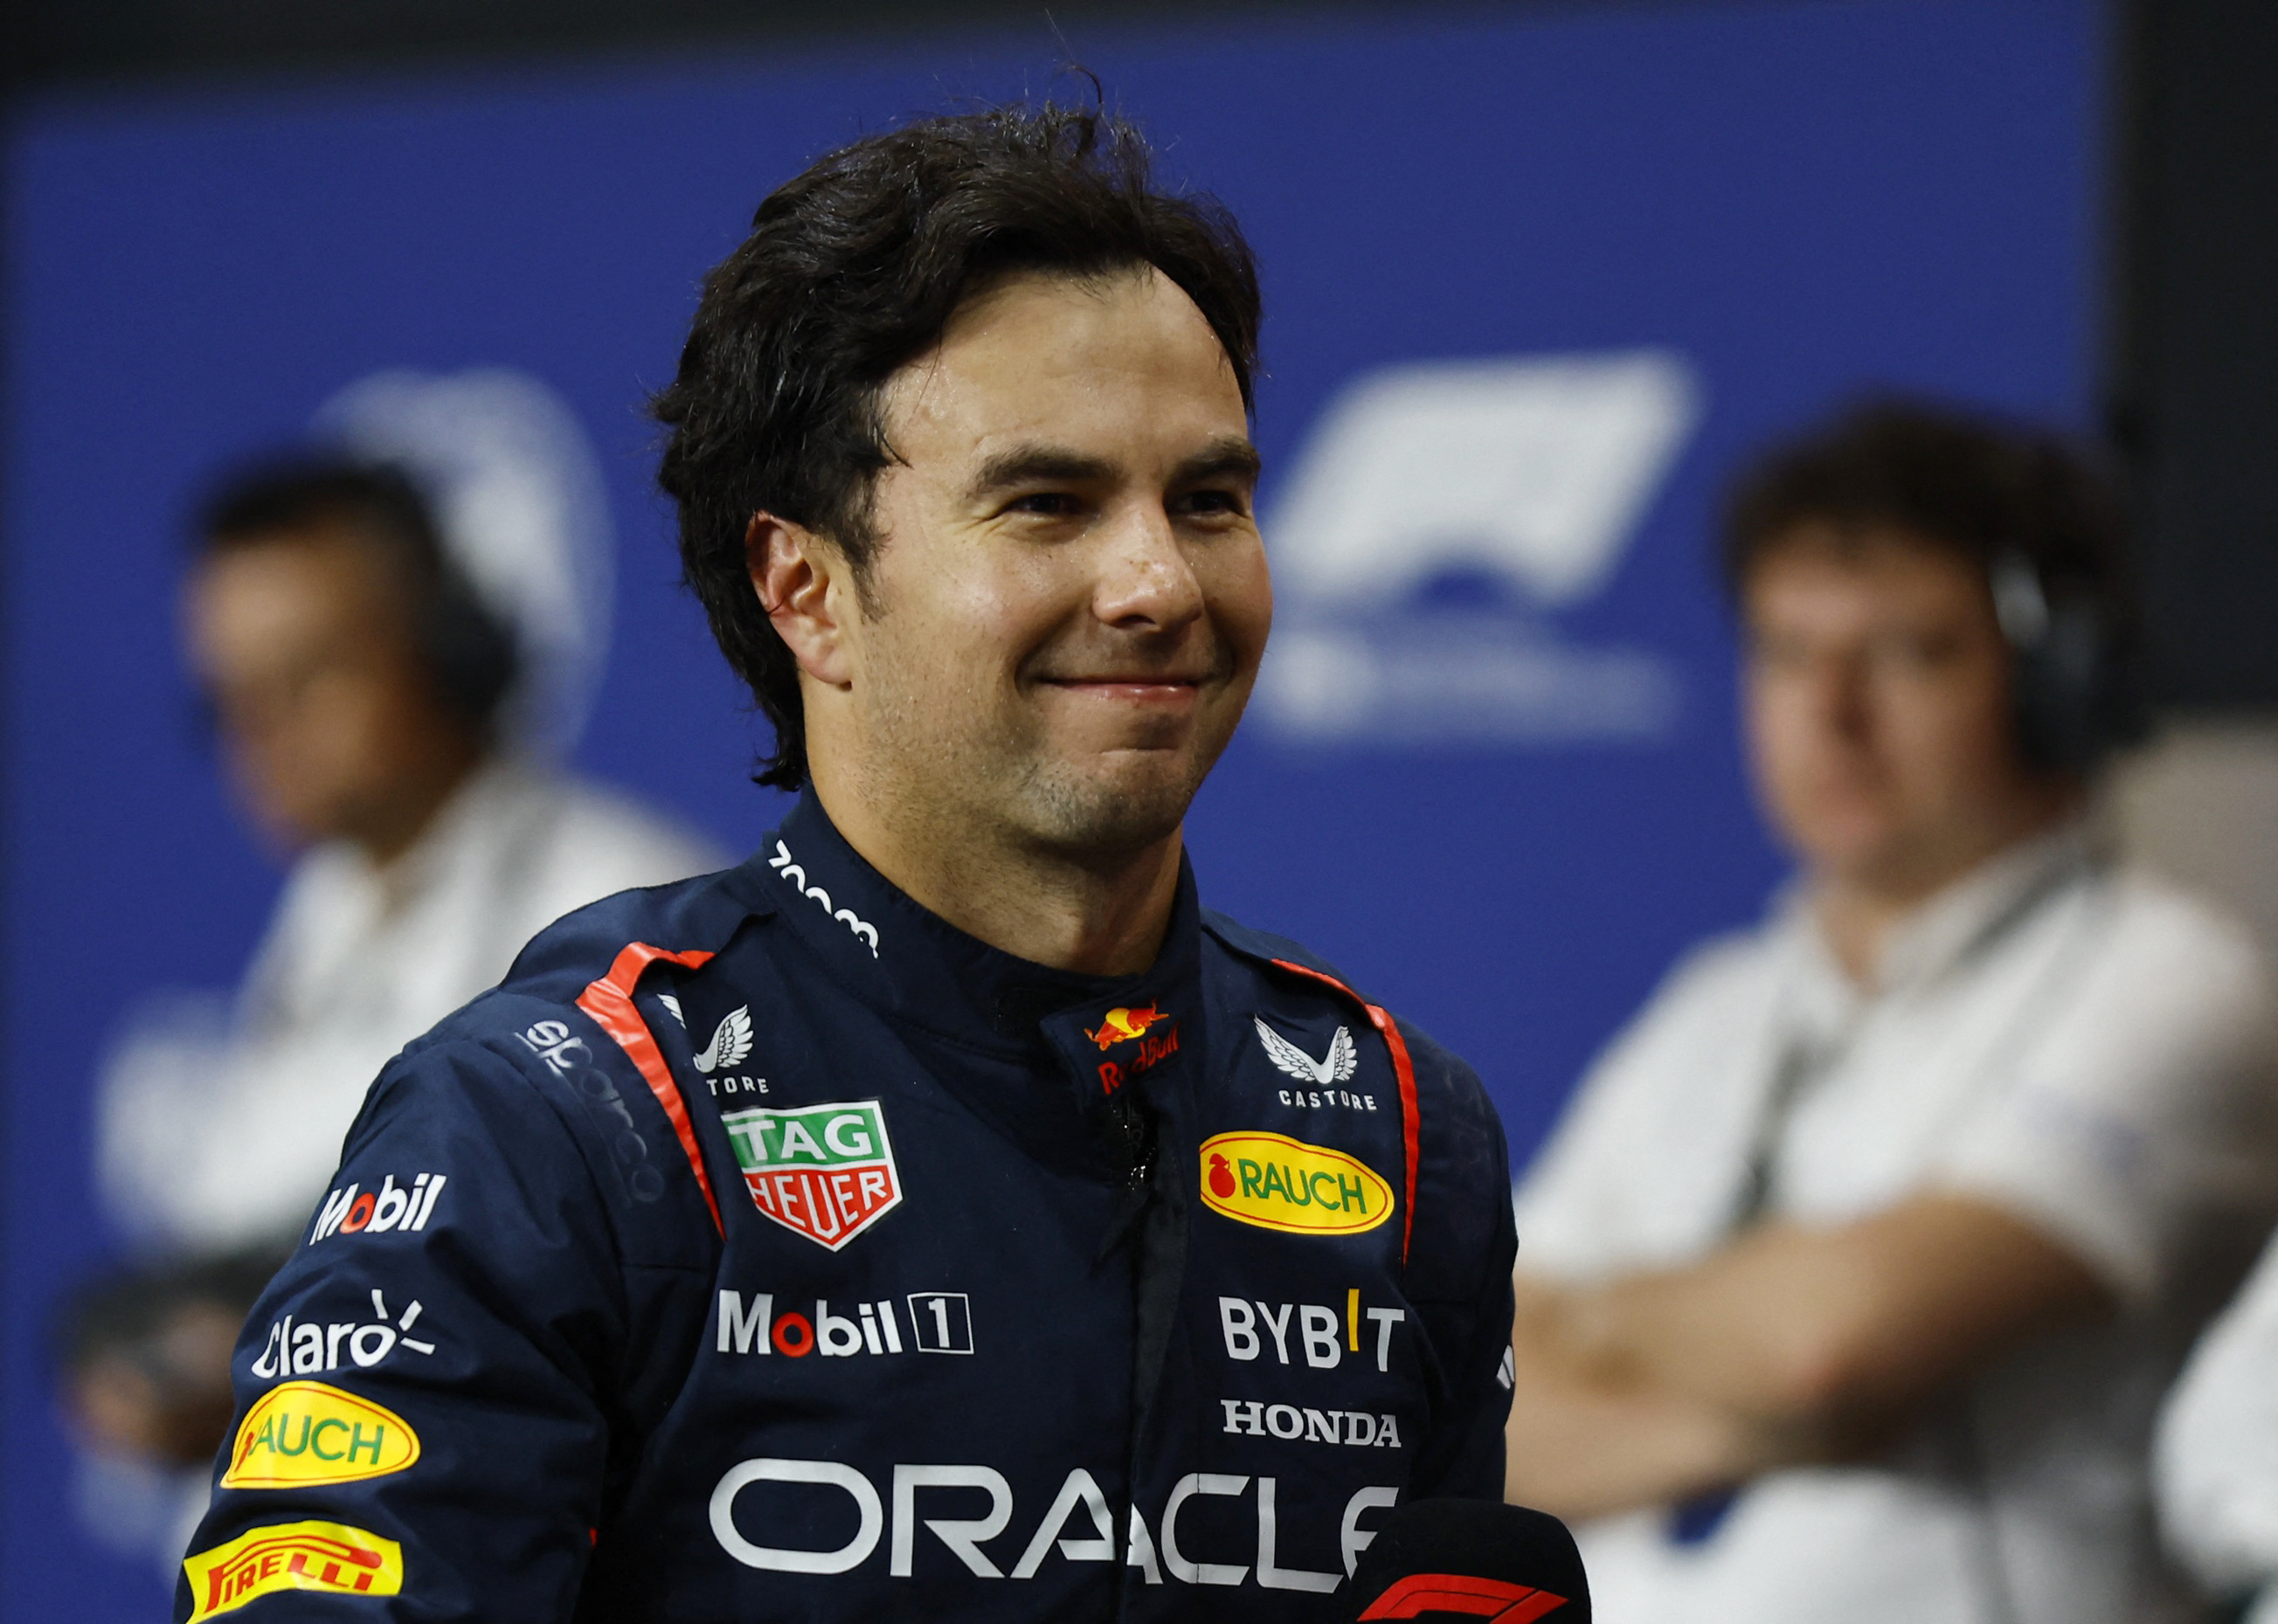 Checo Pérez consiguió la pole position en el GP de Arabia Saudita por segundo año consecutivo